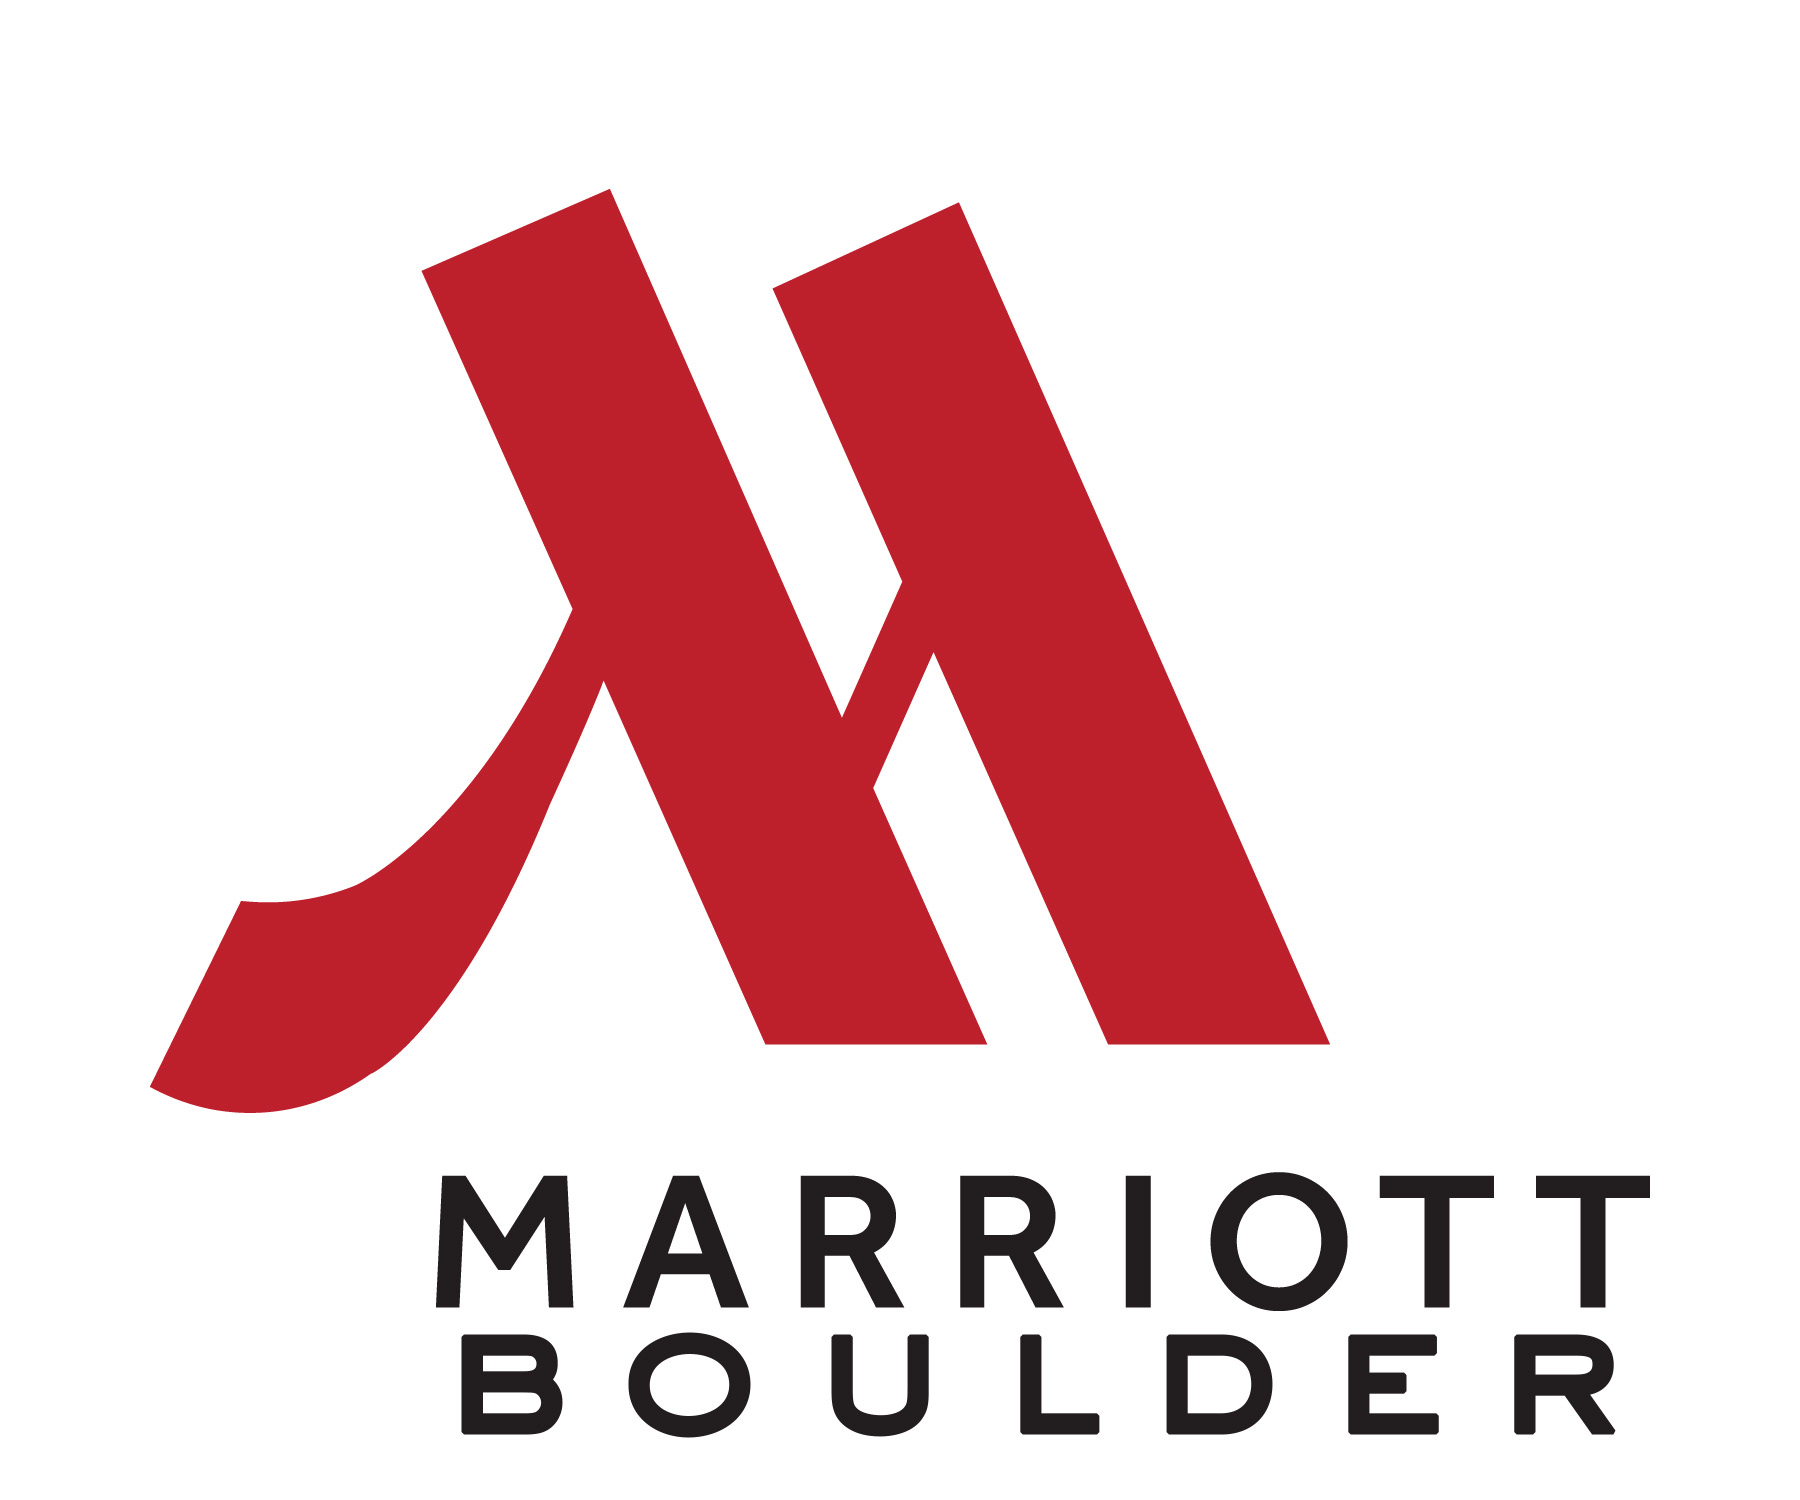 Boulder Marriott